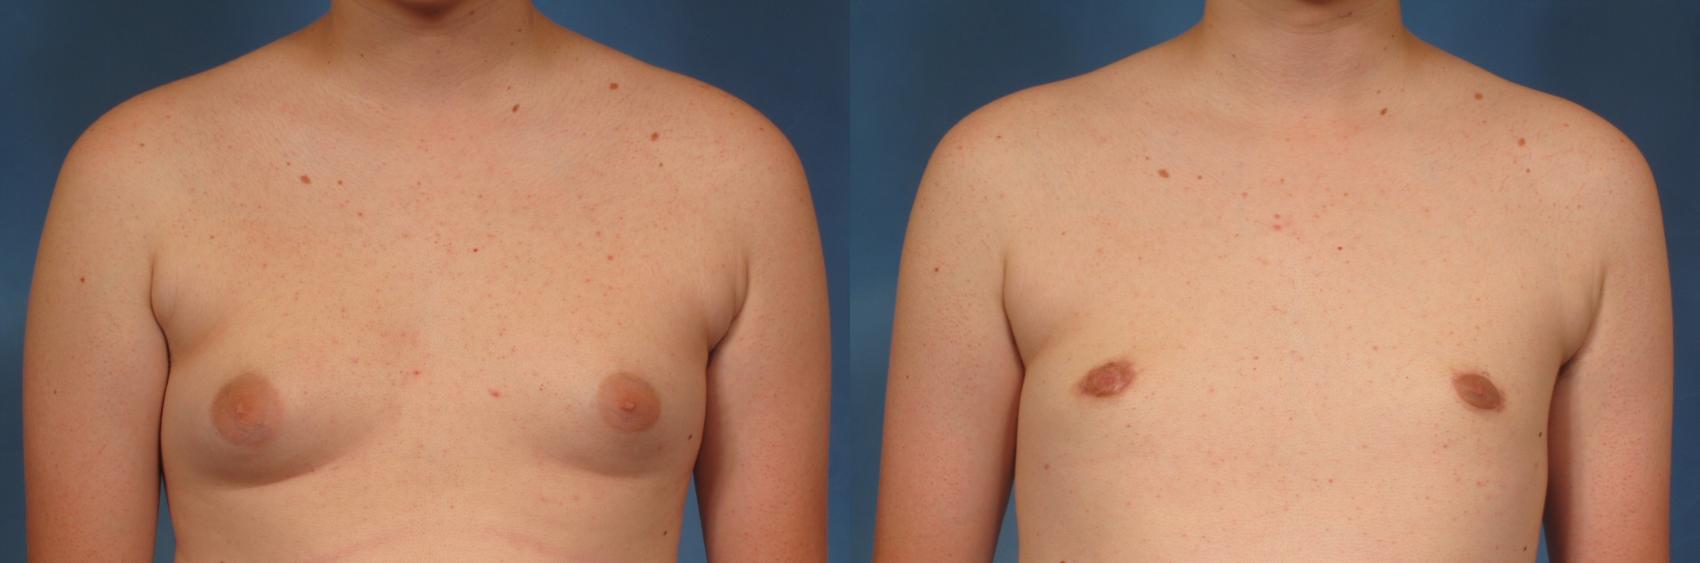 男性减胸前后病例147视图1在那不勒斯和佛罗里达州迈尔斯堡的视图